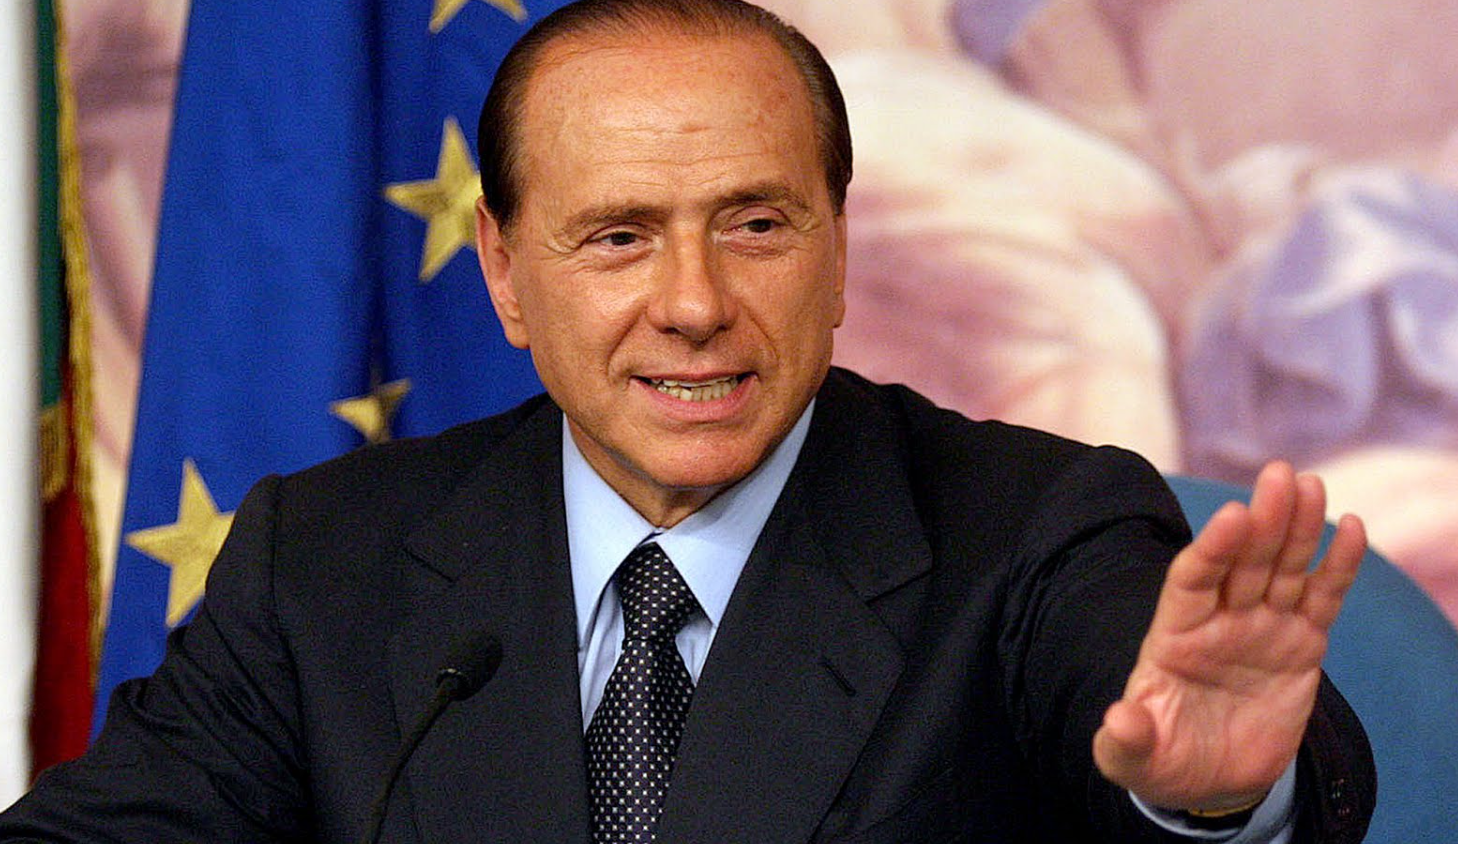 francobollo dedicato Berlusconi